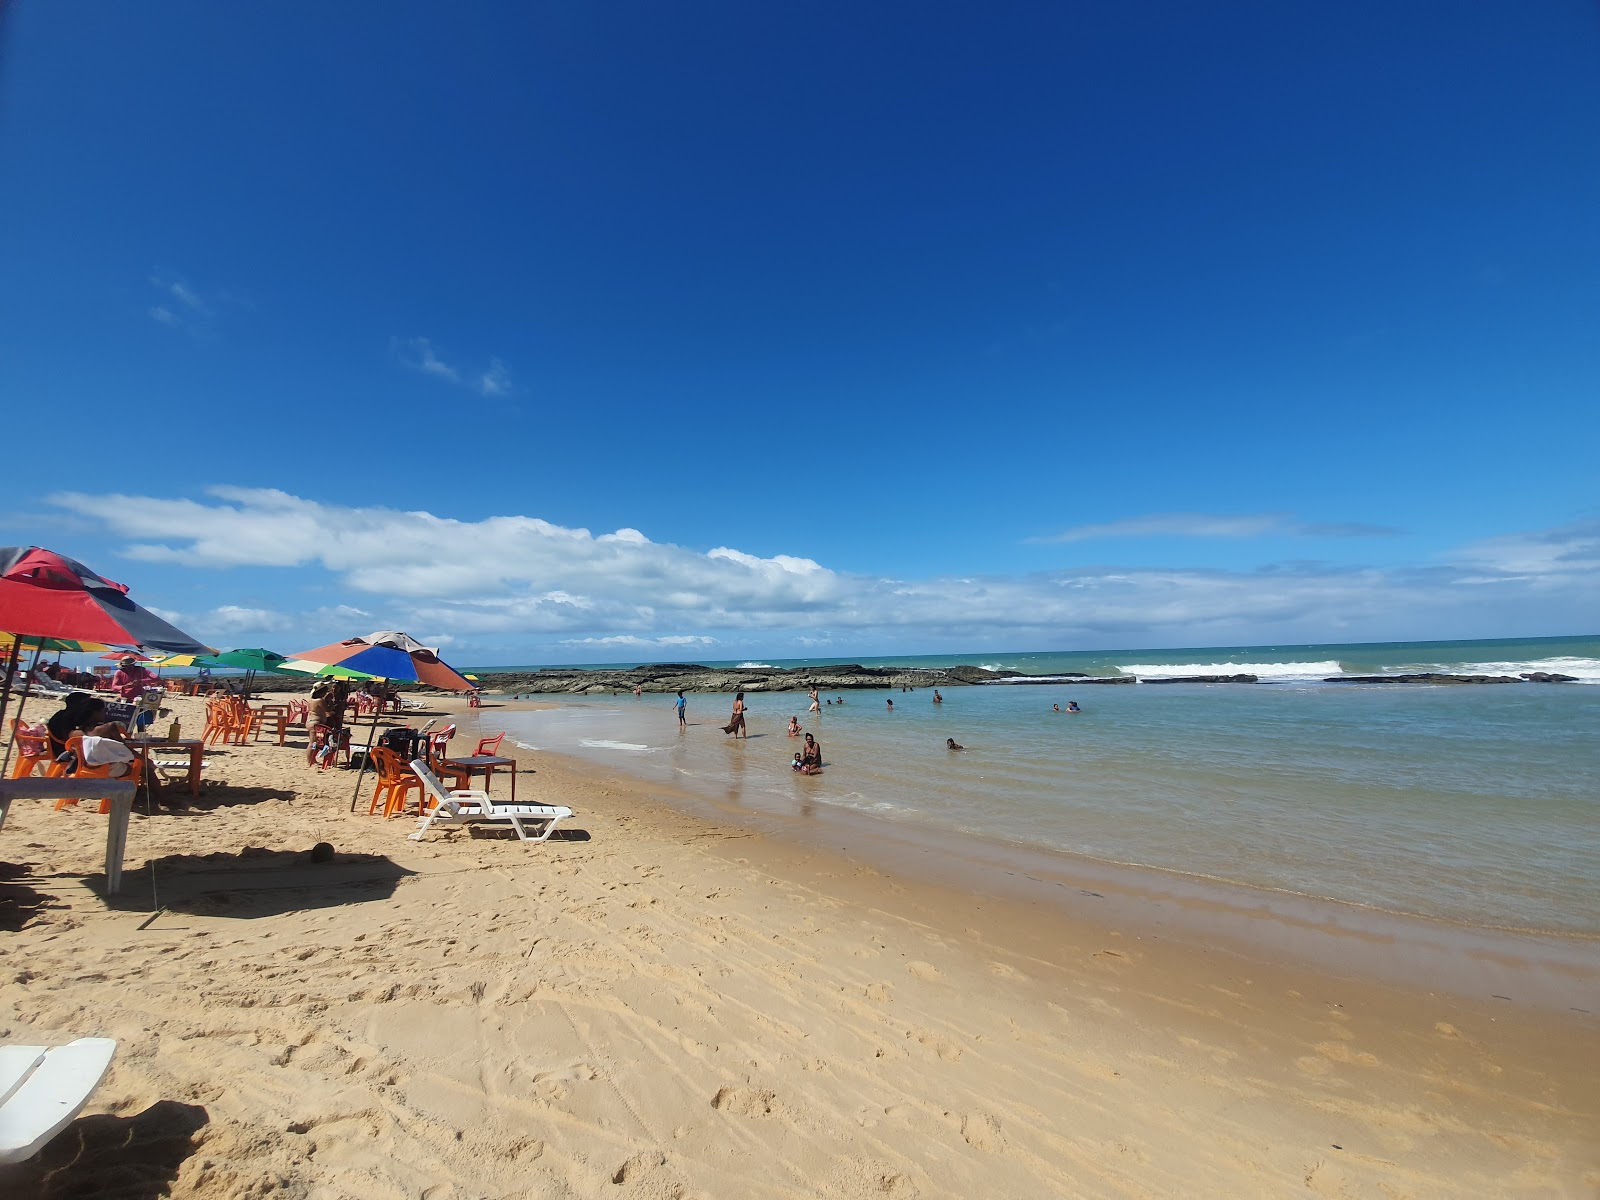 Artistas Plajı'in fotoğrafı geniş plaj ile birlikte